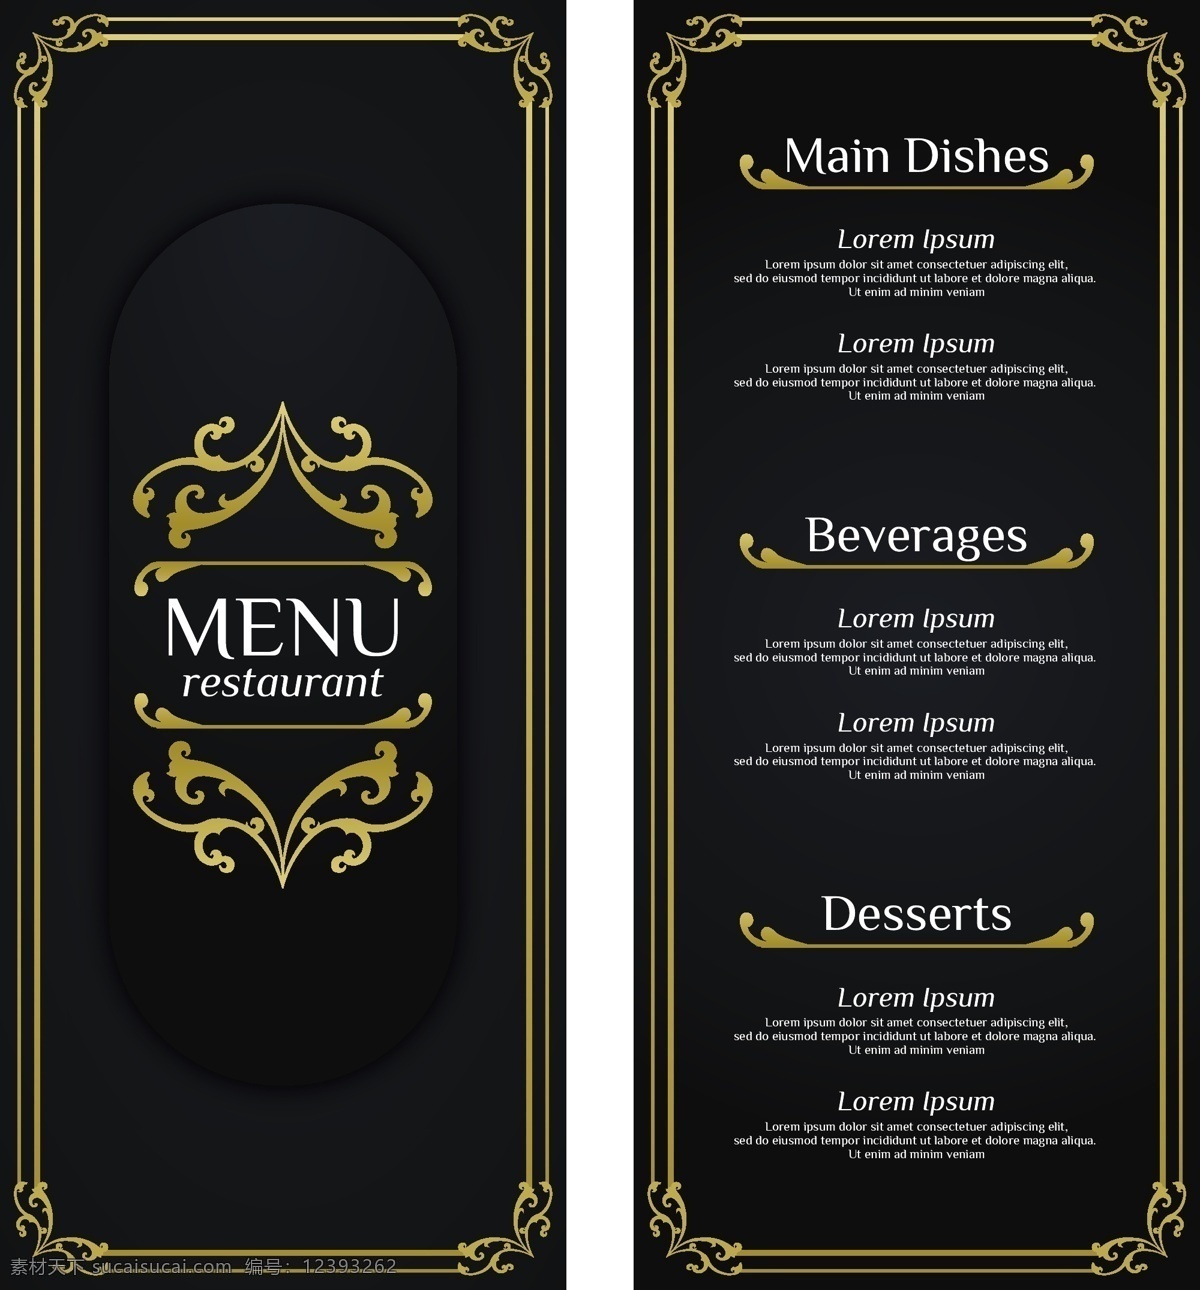 复古 菜单 模板 黄金 饰品 标志 食品 古董 餐厅 厨师 豪华 餐厅菜单 优雅 金 平 烹饪 餐厅标志 平面设计